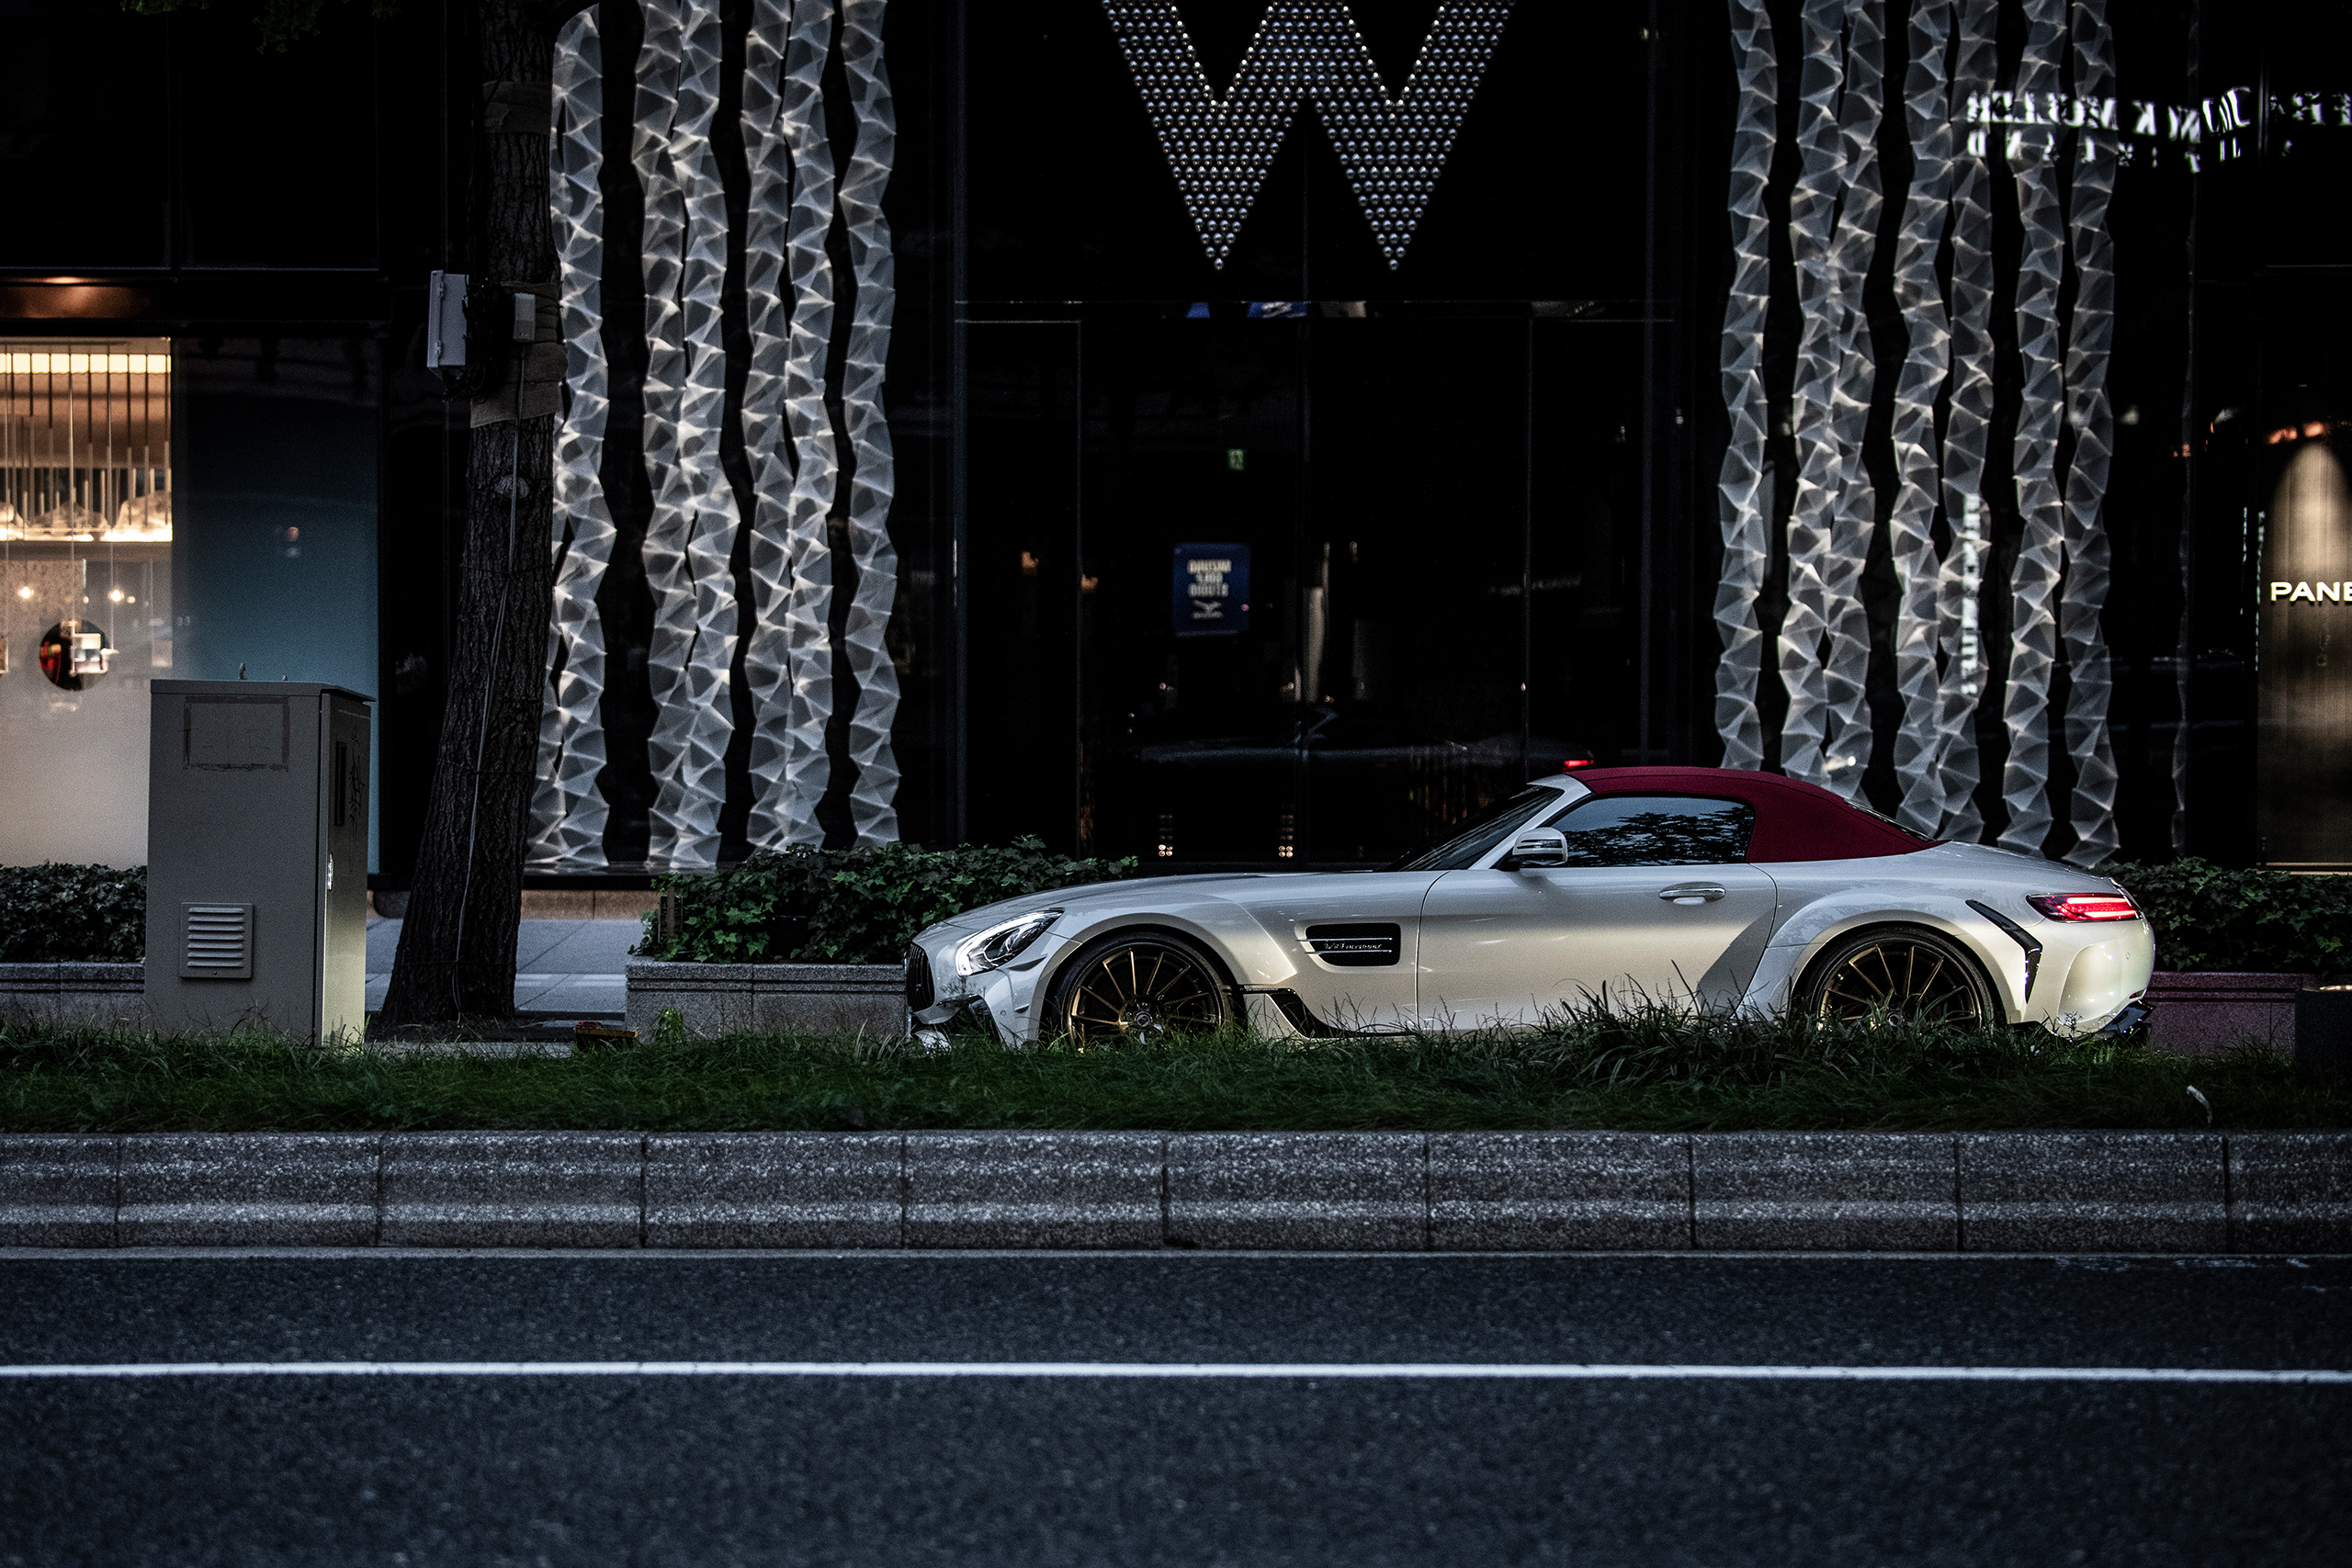 DESIGN WORKS Mercedes-AMG GT C Roadster